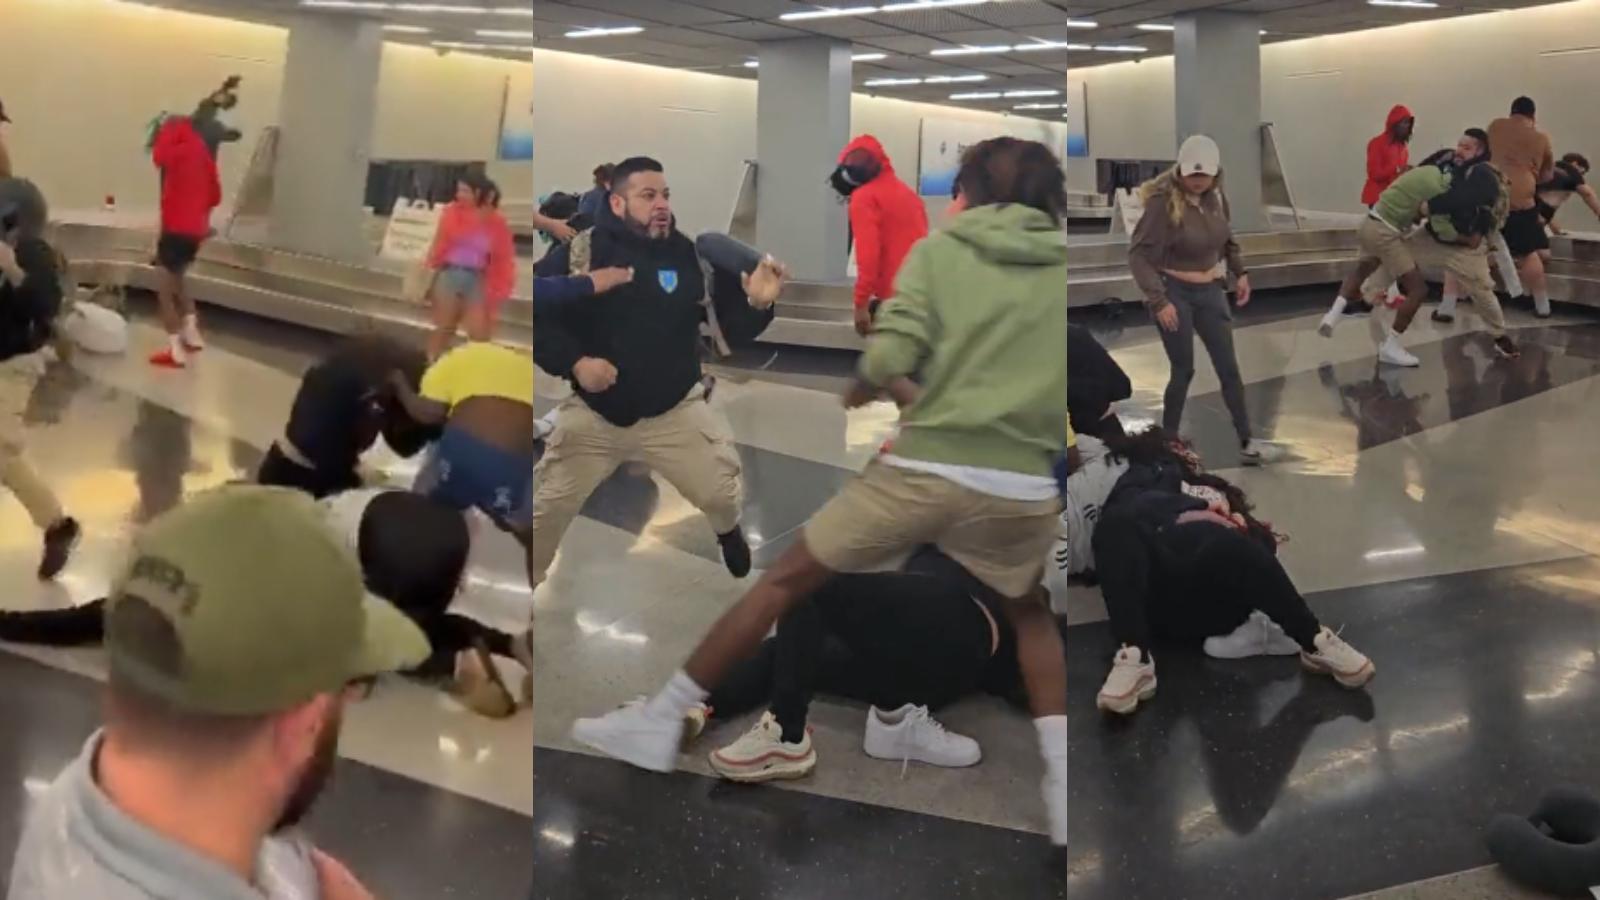 massive airport brawl at baggage claim